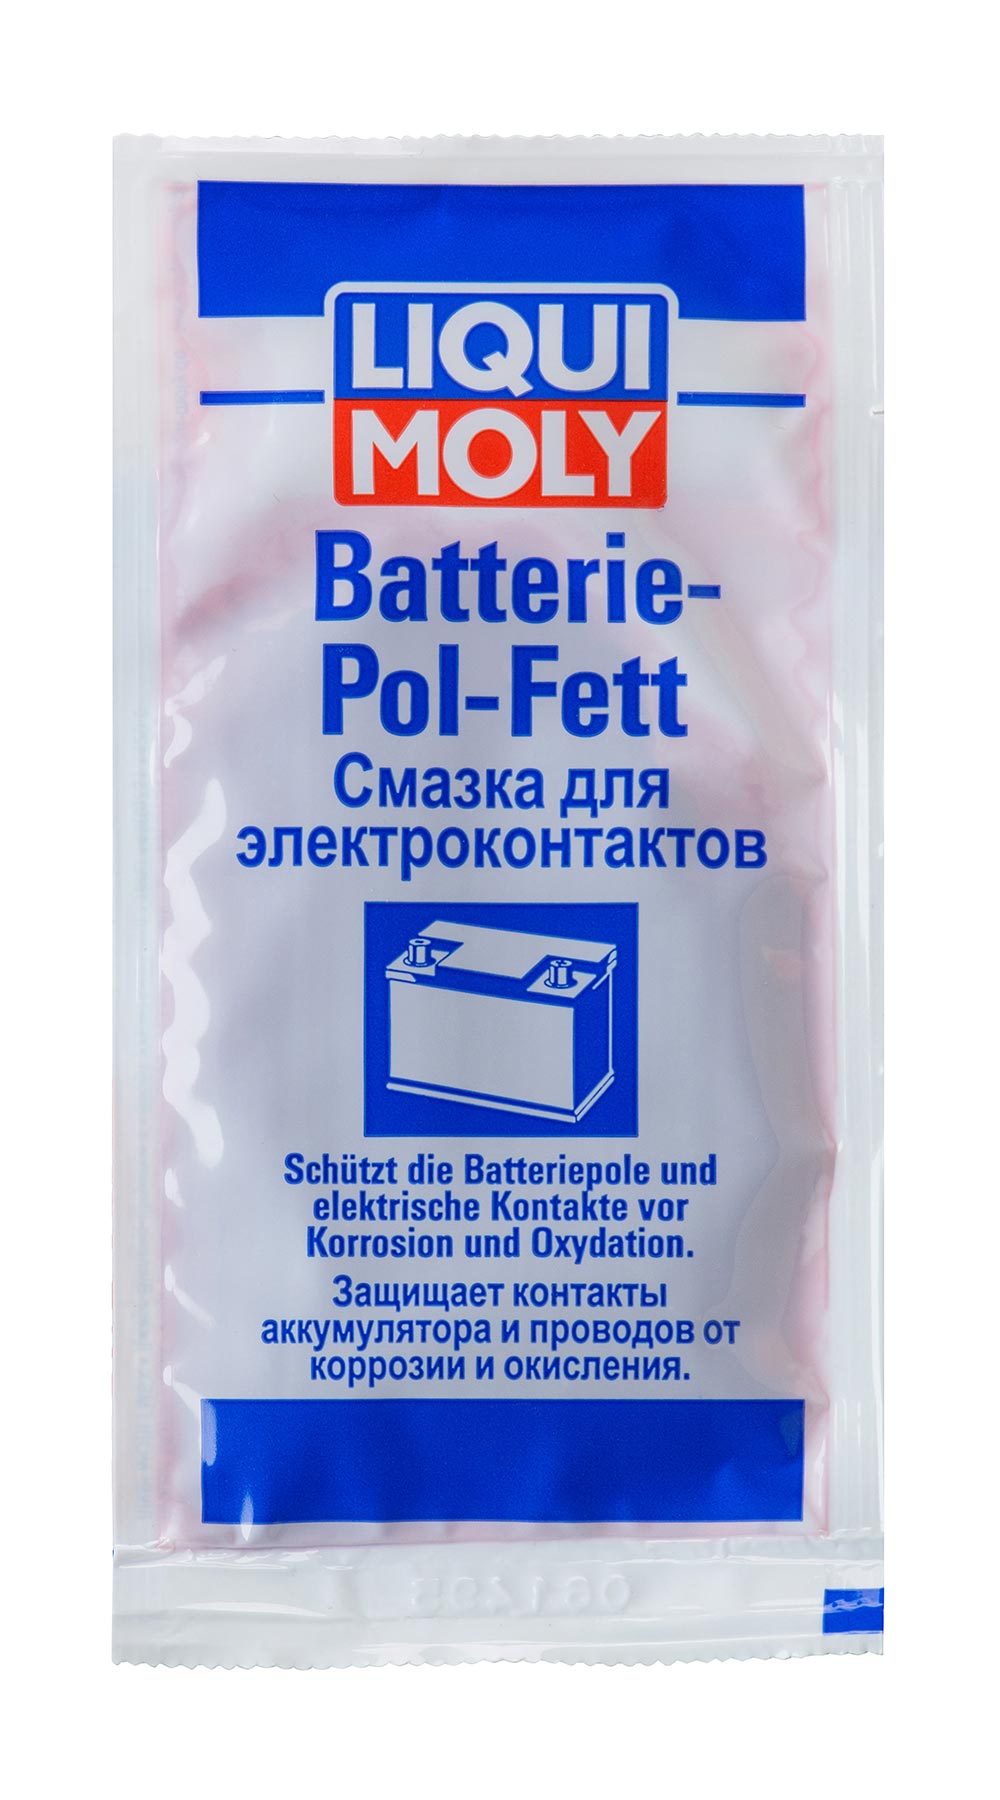 Смазка для электроконтактов Batterie-Pol-Fett 0.01мл